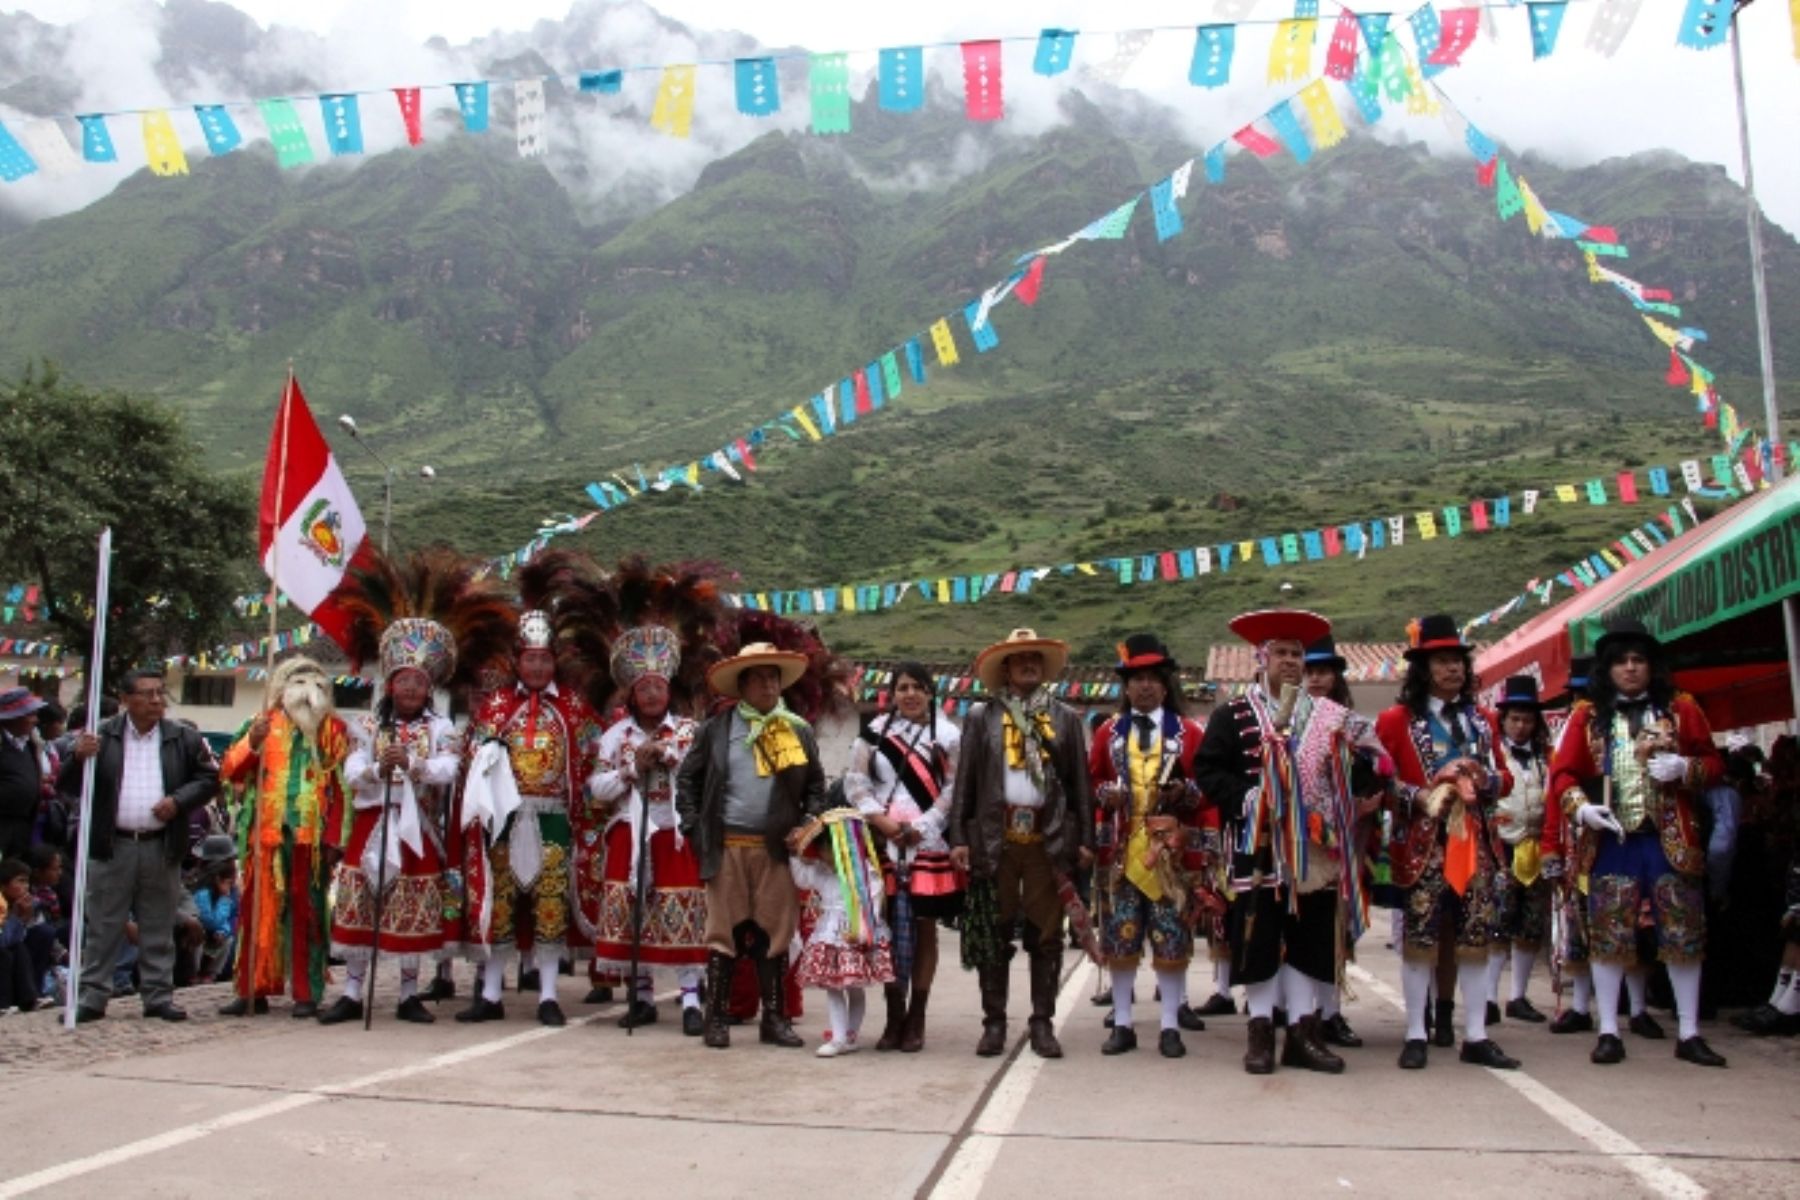 La Festividad de la Virgen del Rosario de Huallhua, distrito de San Salvador, provincia de Calca, Cusco, fue declarada Patrimonio Cultural de la Nación.